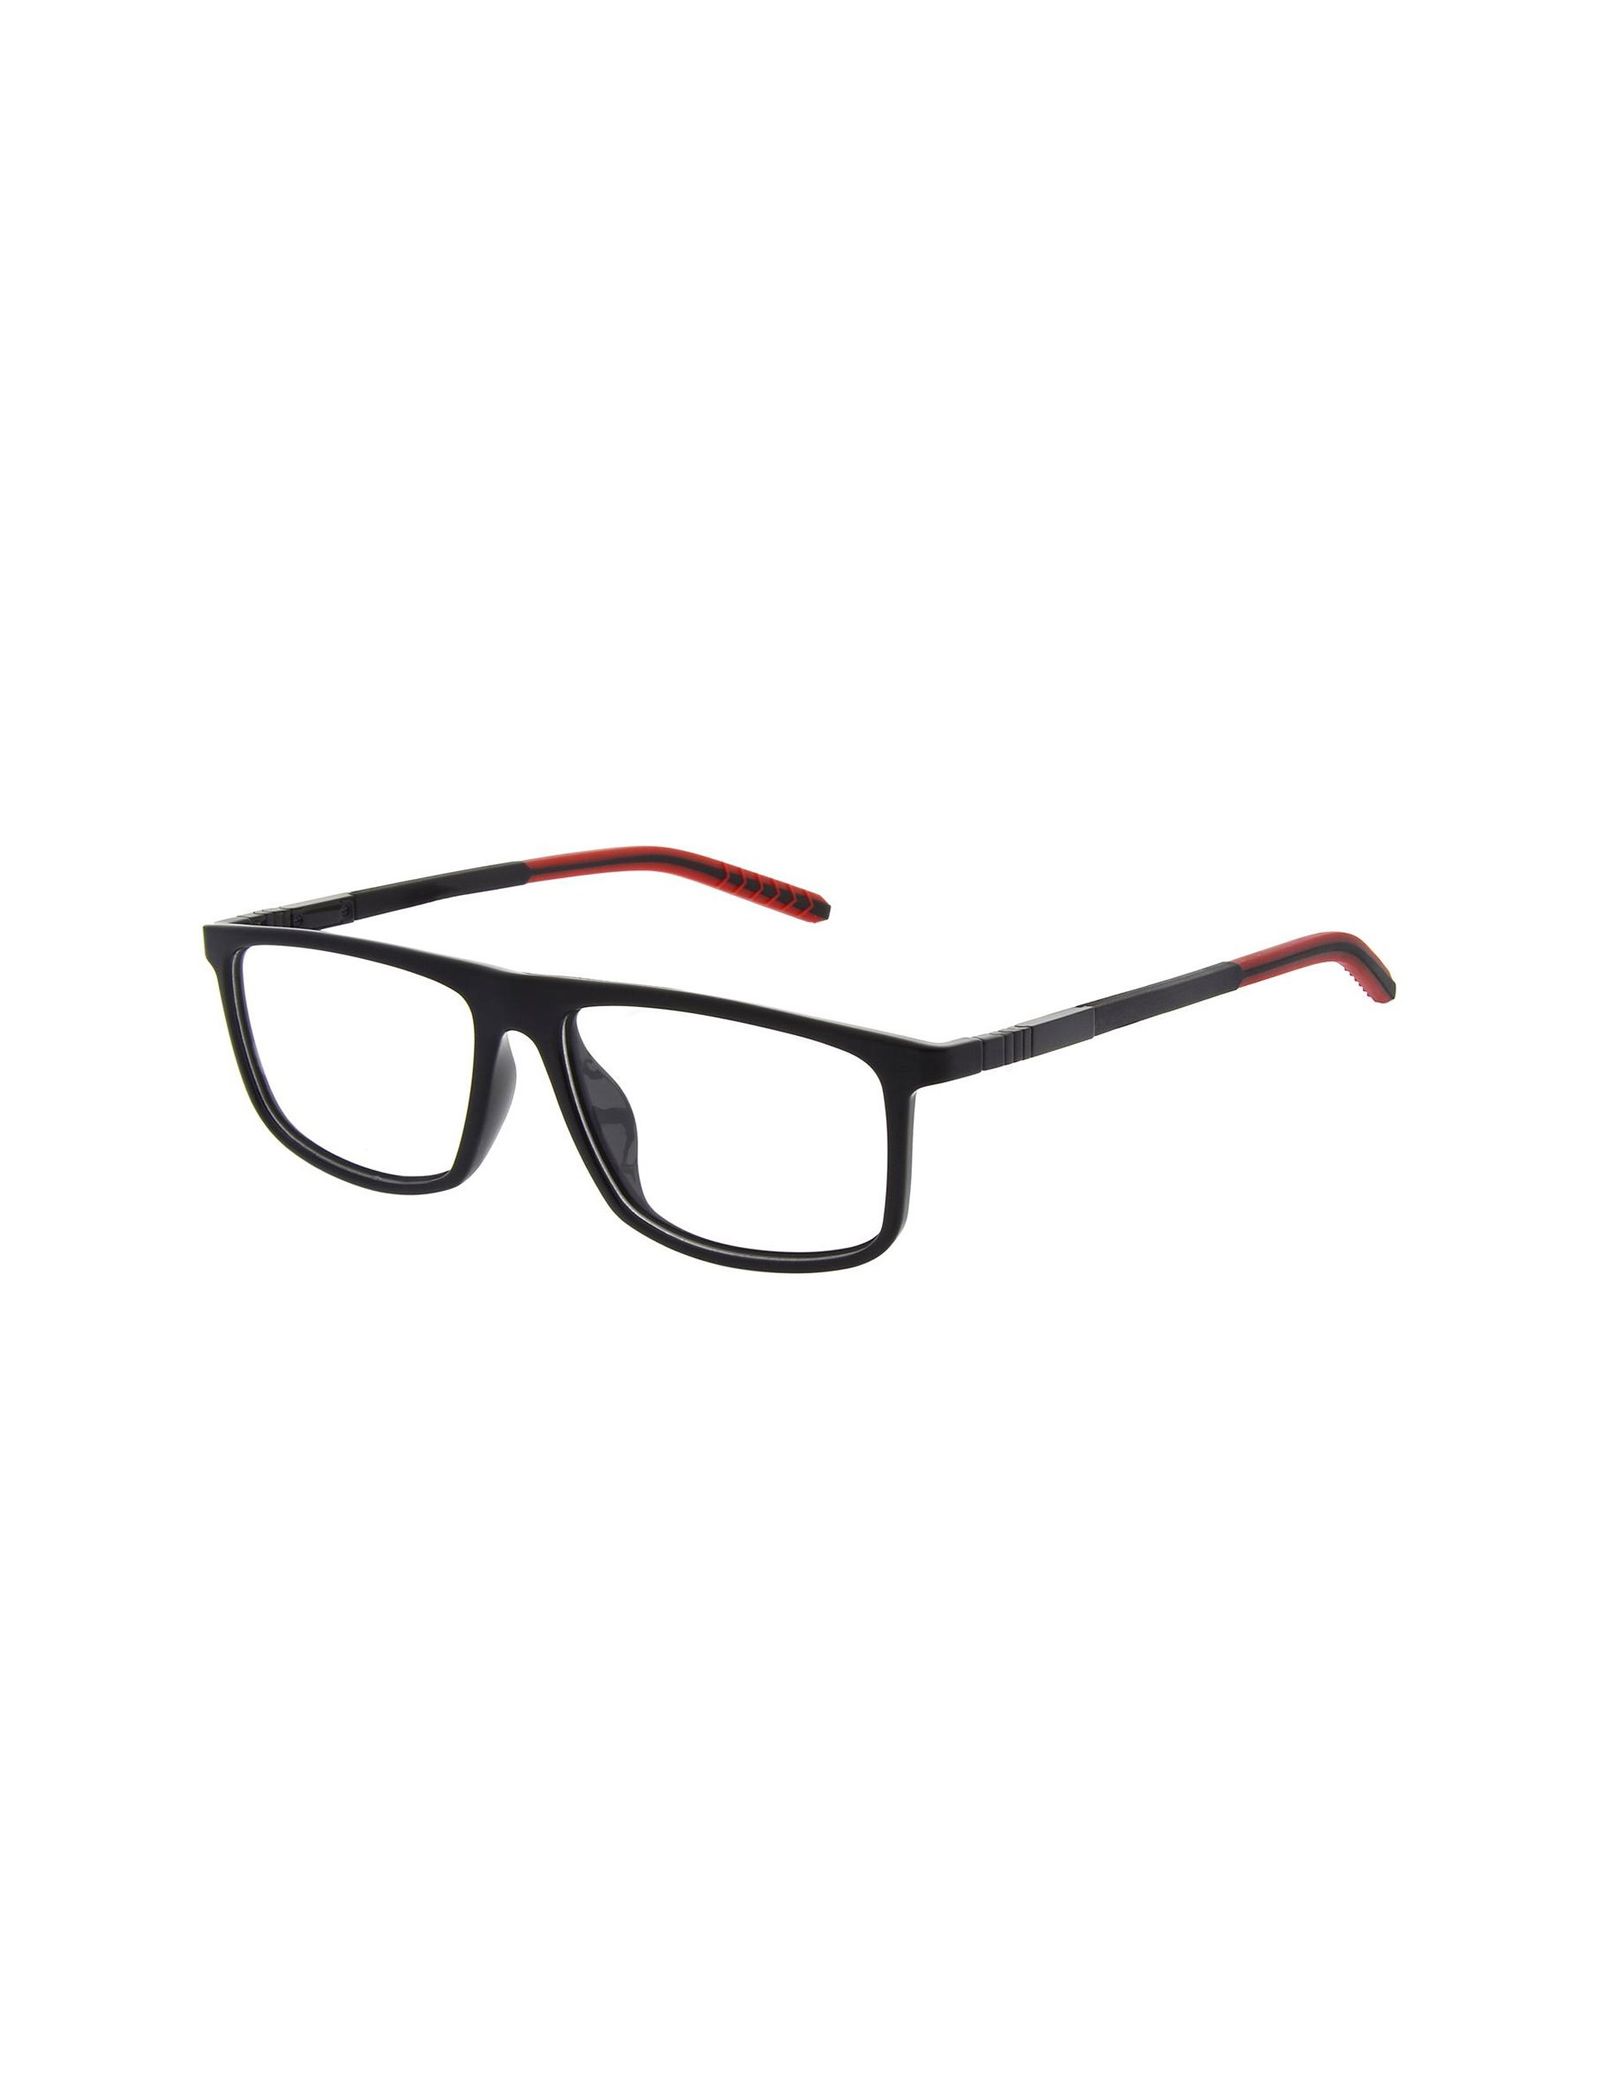 عینک طبی ویفرر مردانه - اسپاین - مشکي و قرمز - 1